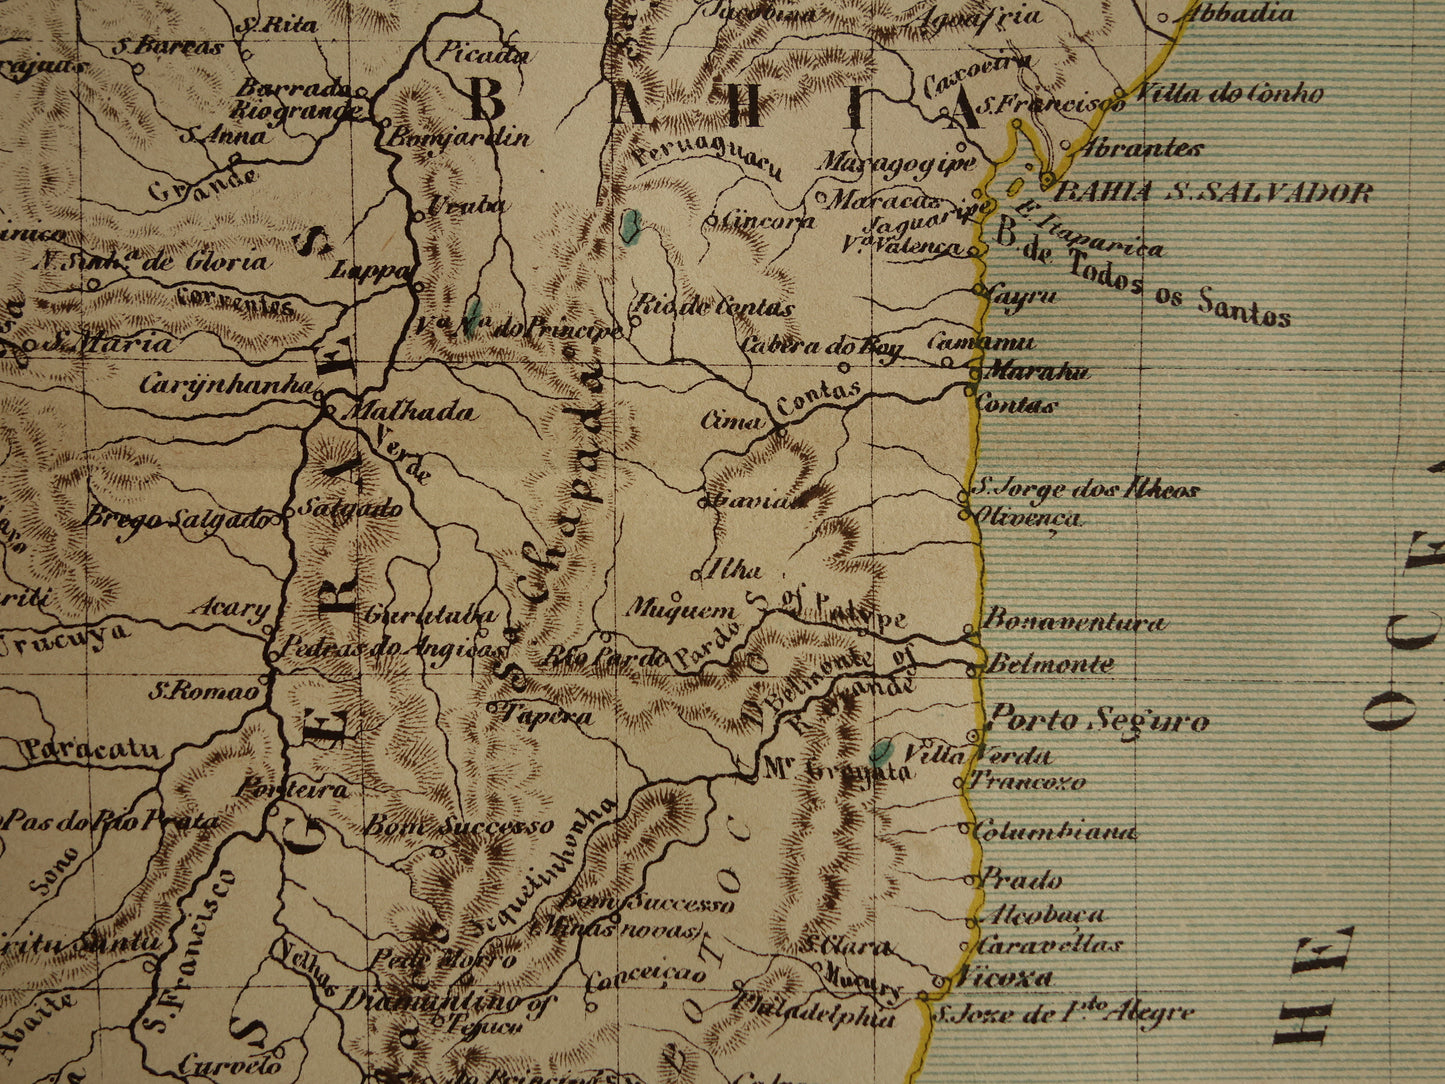 Brazilië oude landkaart oost Brazilië originele antieke Kuyper kaart uit 1882 vintage kaarten Rio de Janeiro Natal